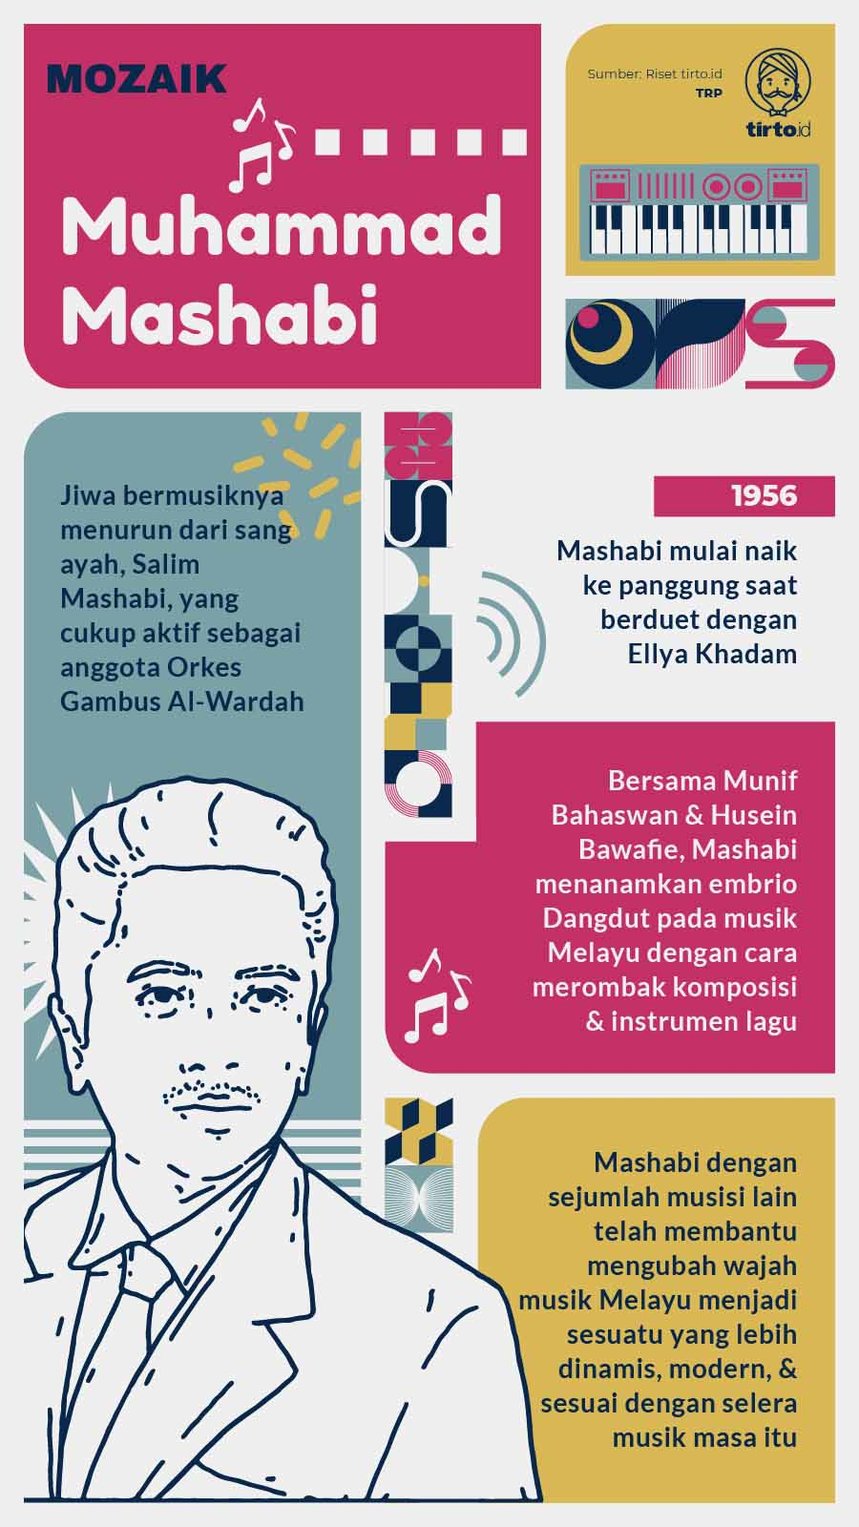 Infografik Mozaik Muhammad Mashabi